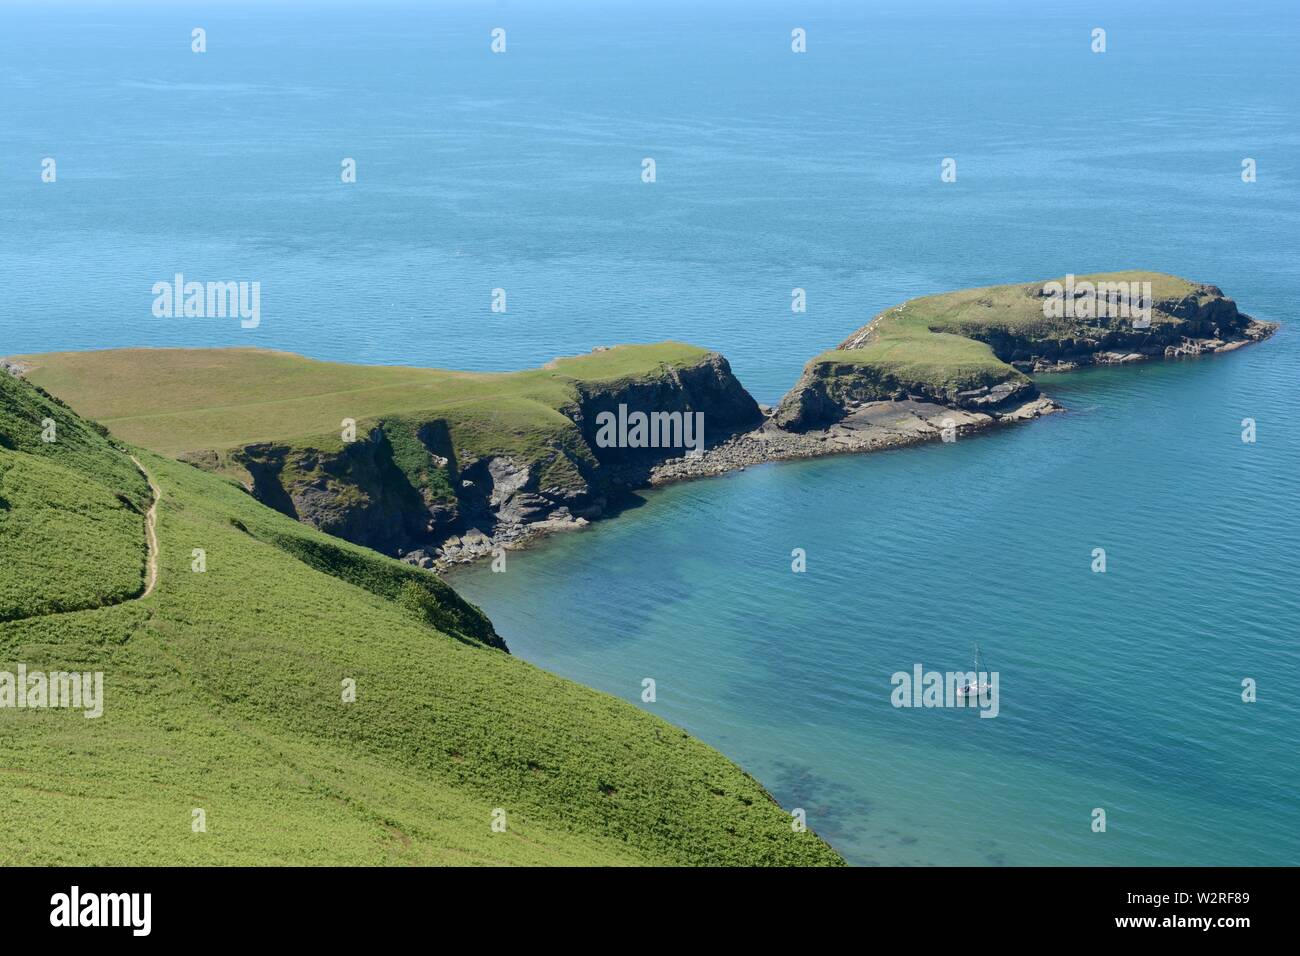 Ynys Lochtyn raz île sur la côte de la baie de Ceredigion utilisé comme icône de l'PathLlangrannog côte Ceredigion Pays de Galles Cymru UK Banque D'Images